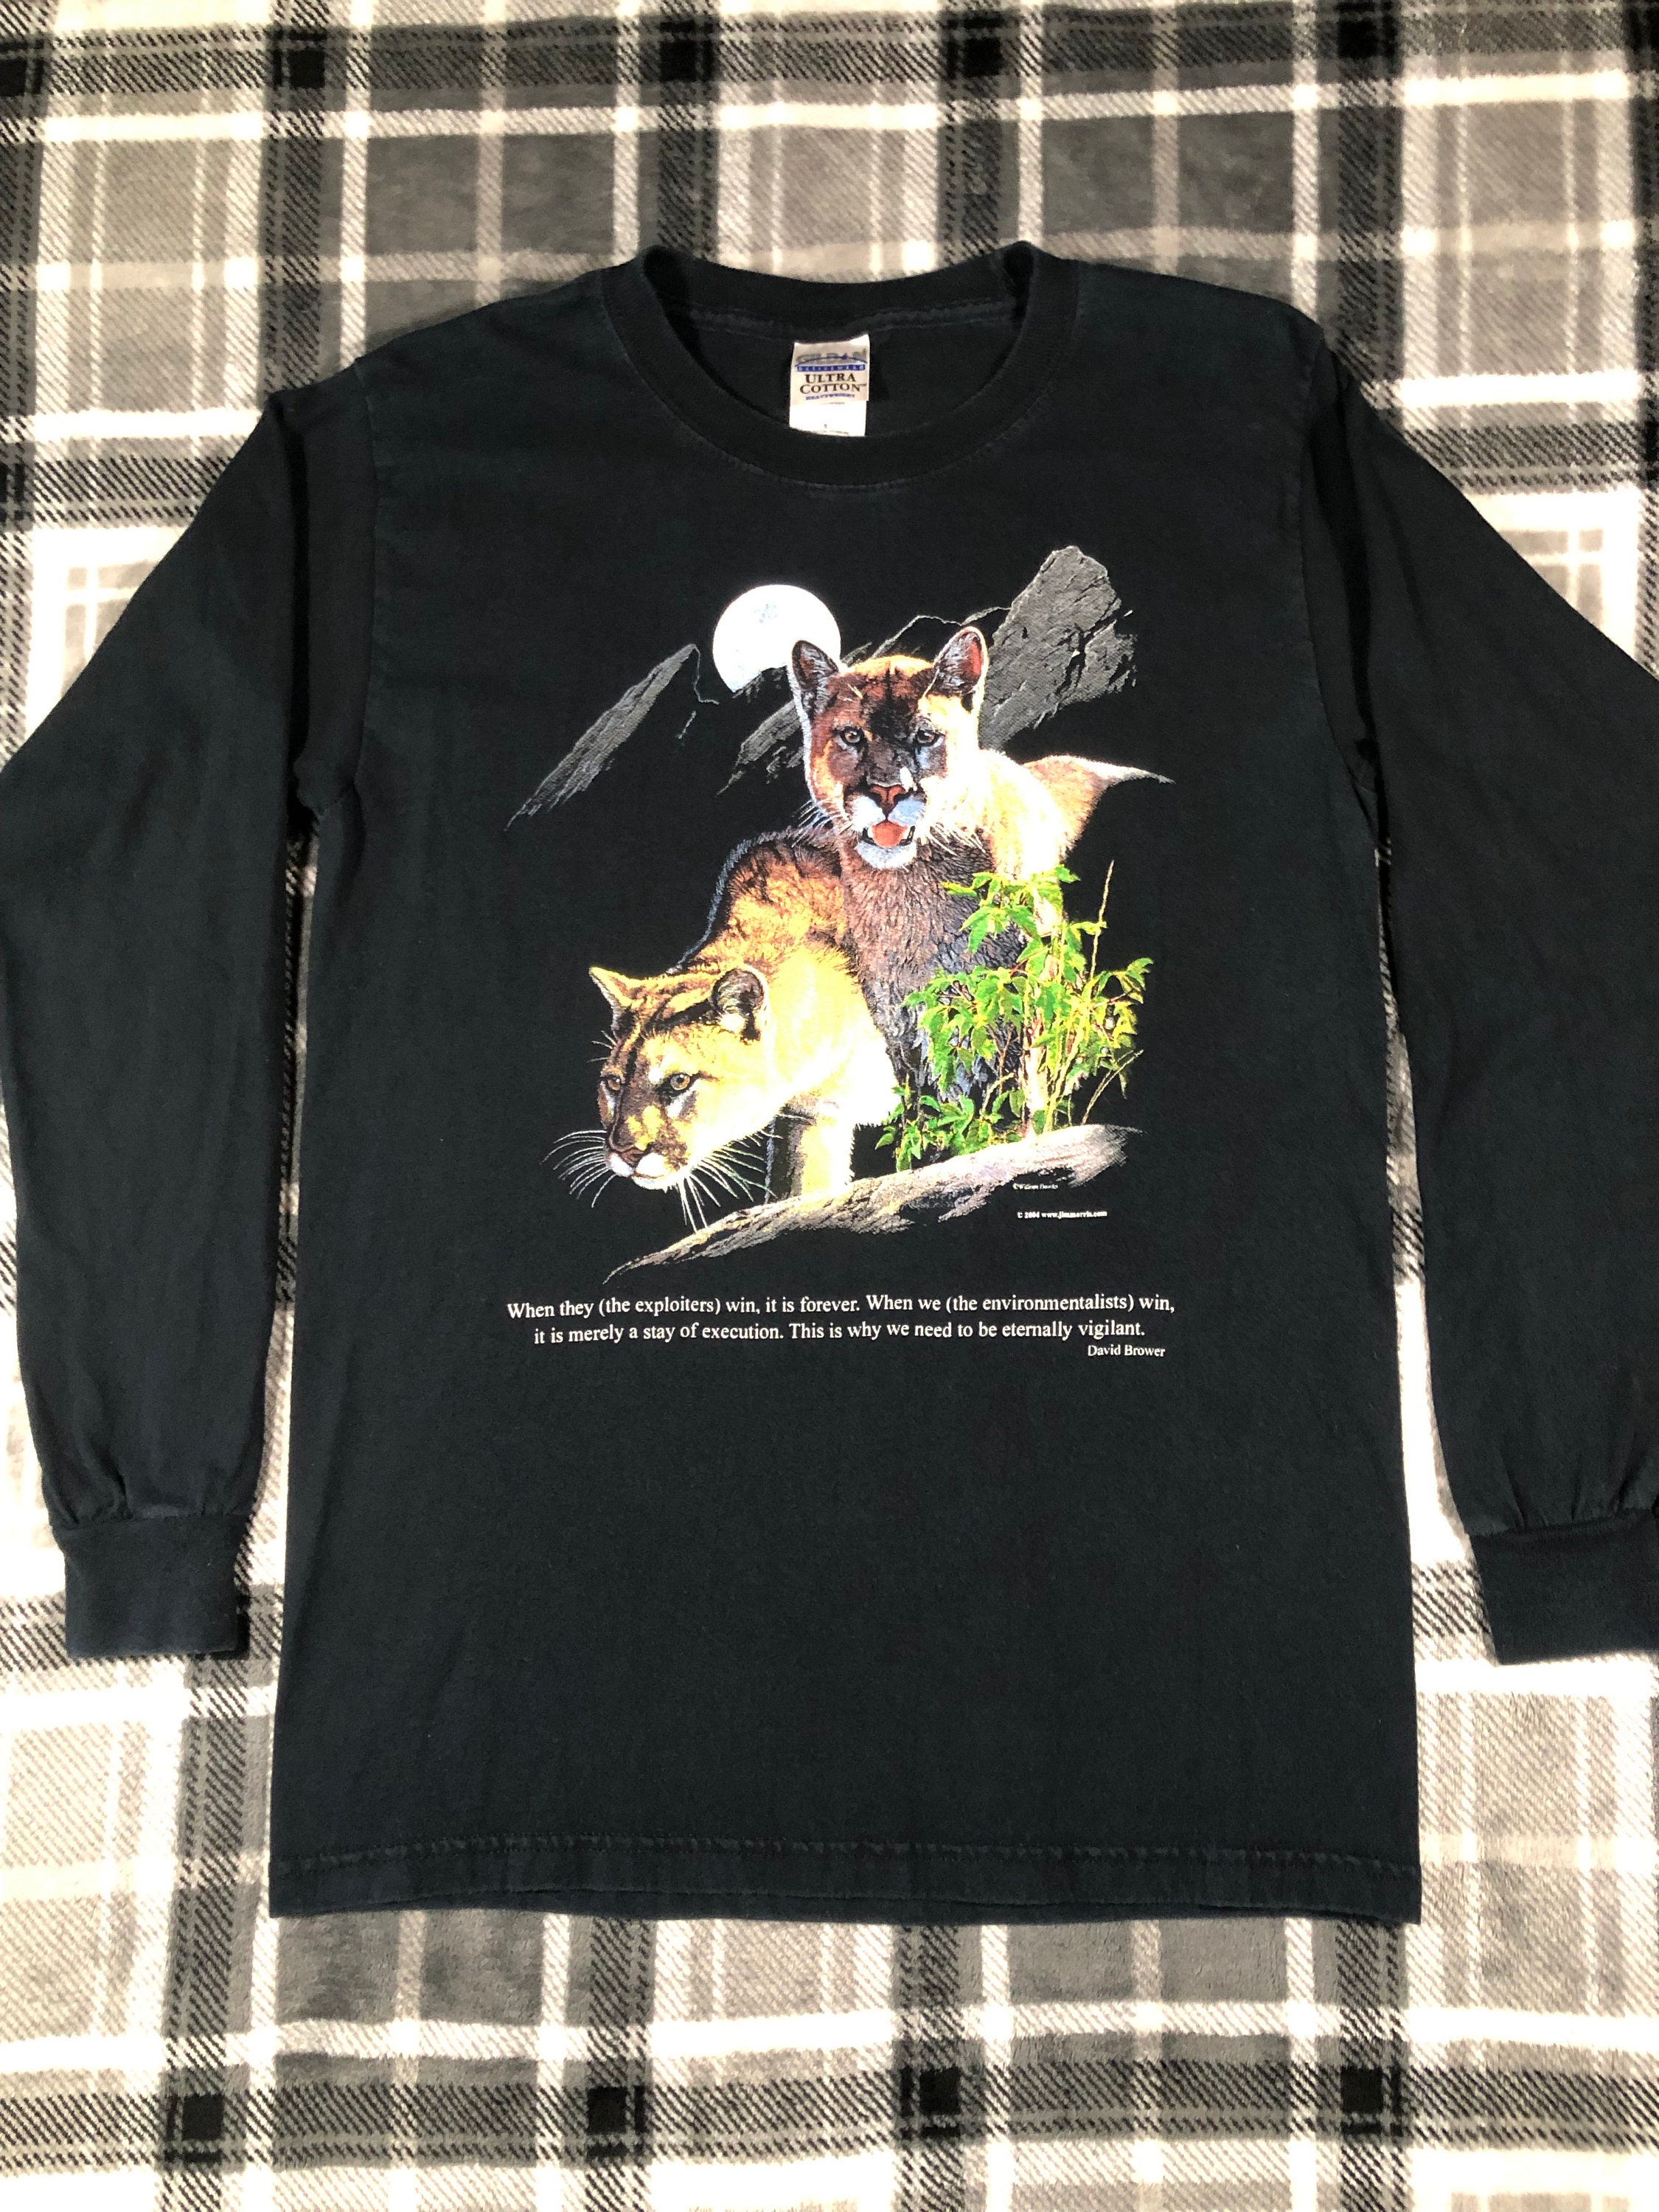 90s Wildlife T Shirt - Etsy